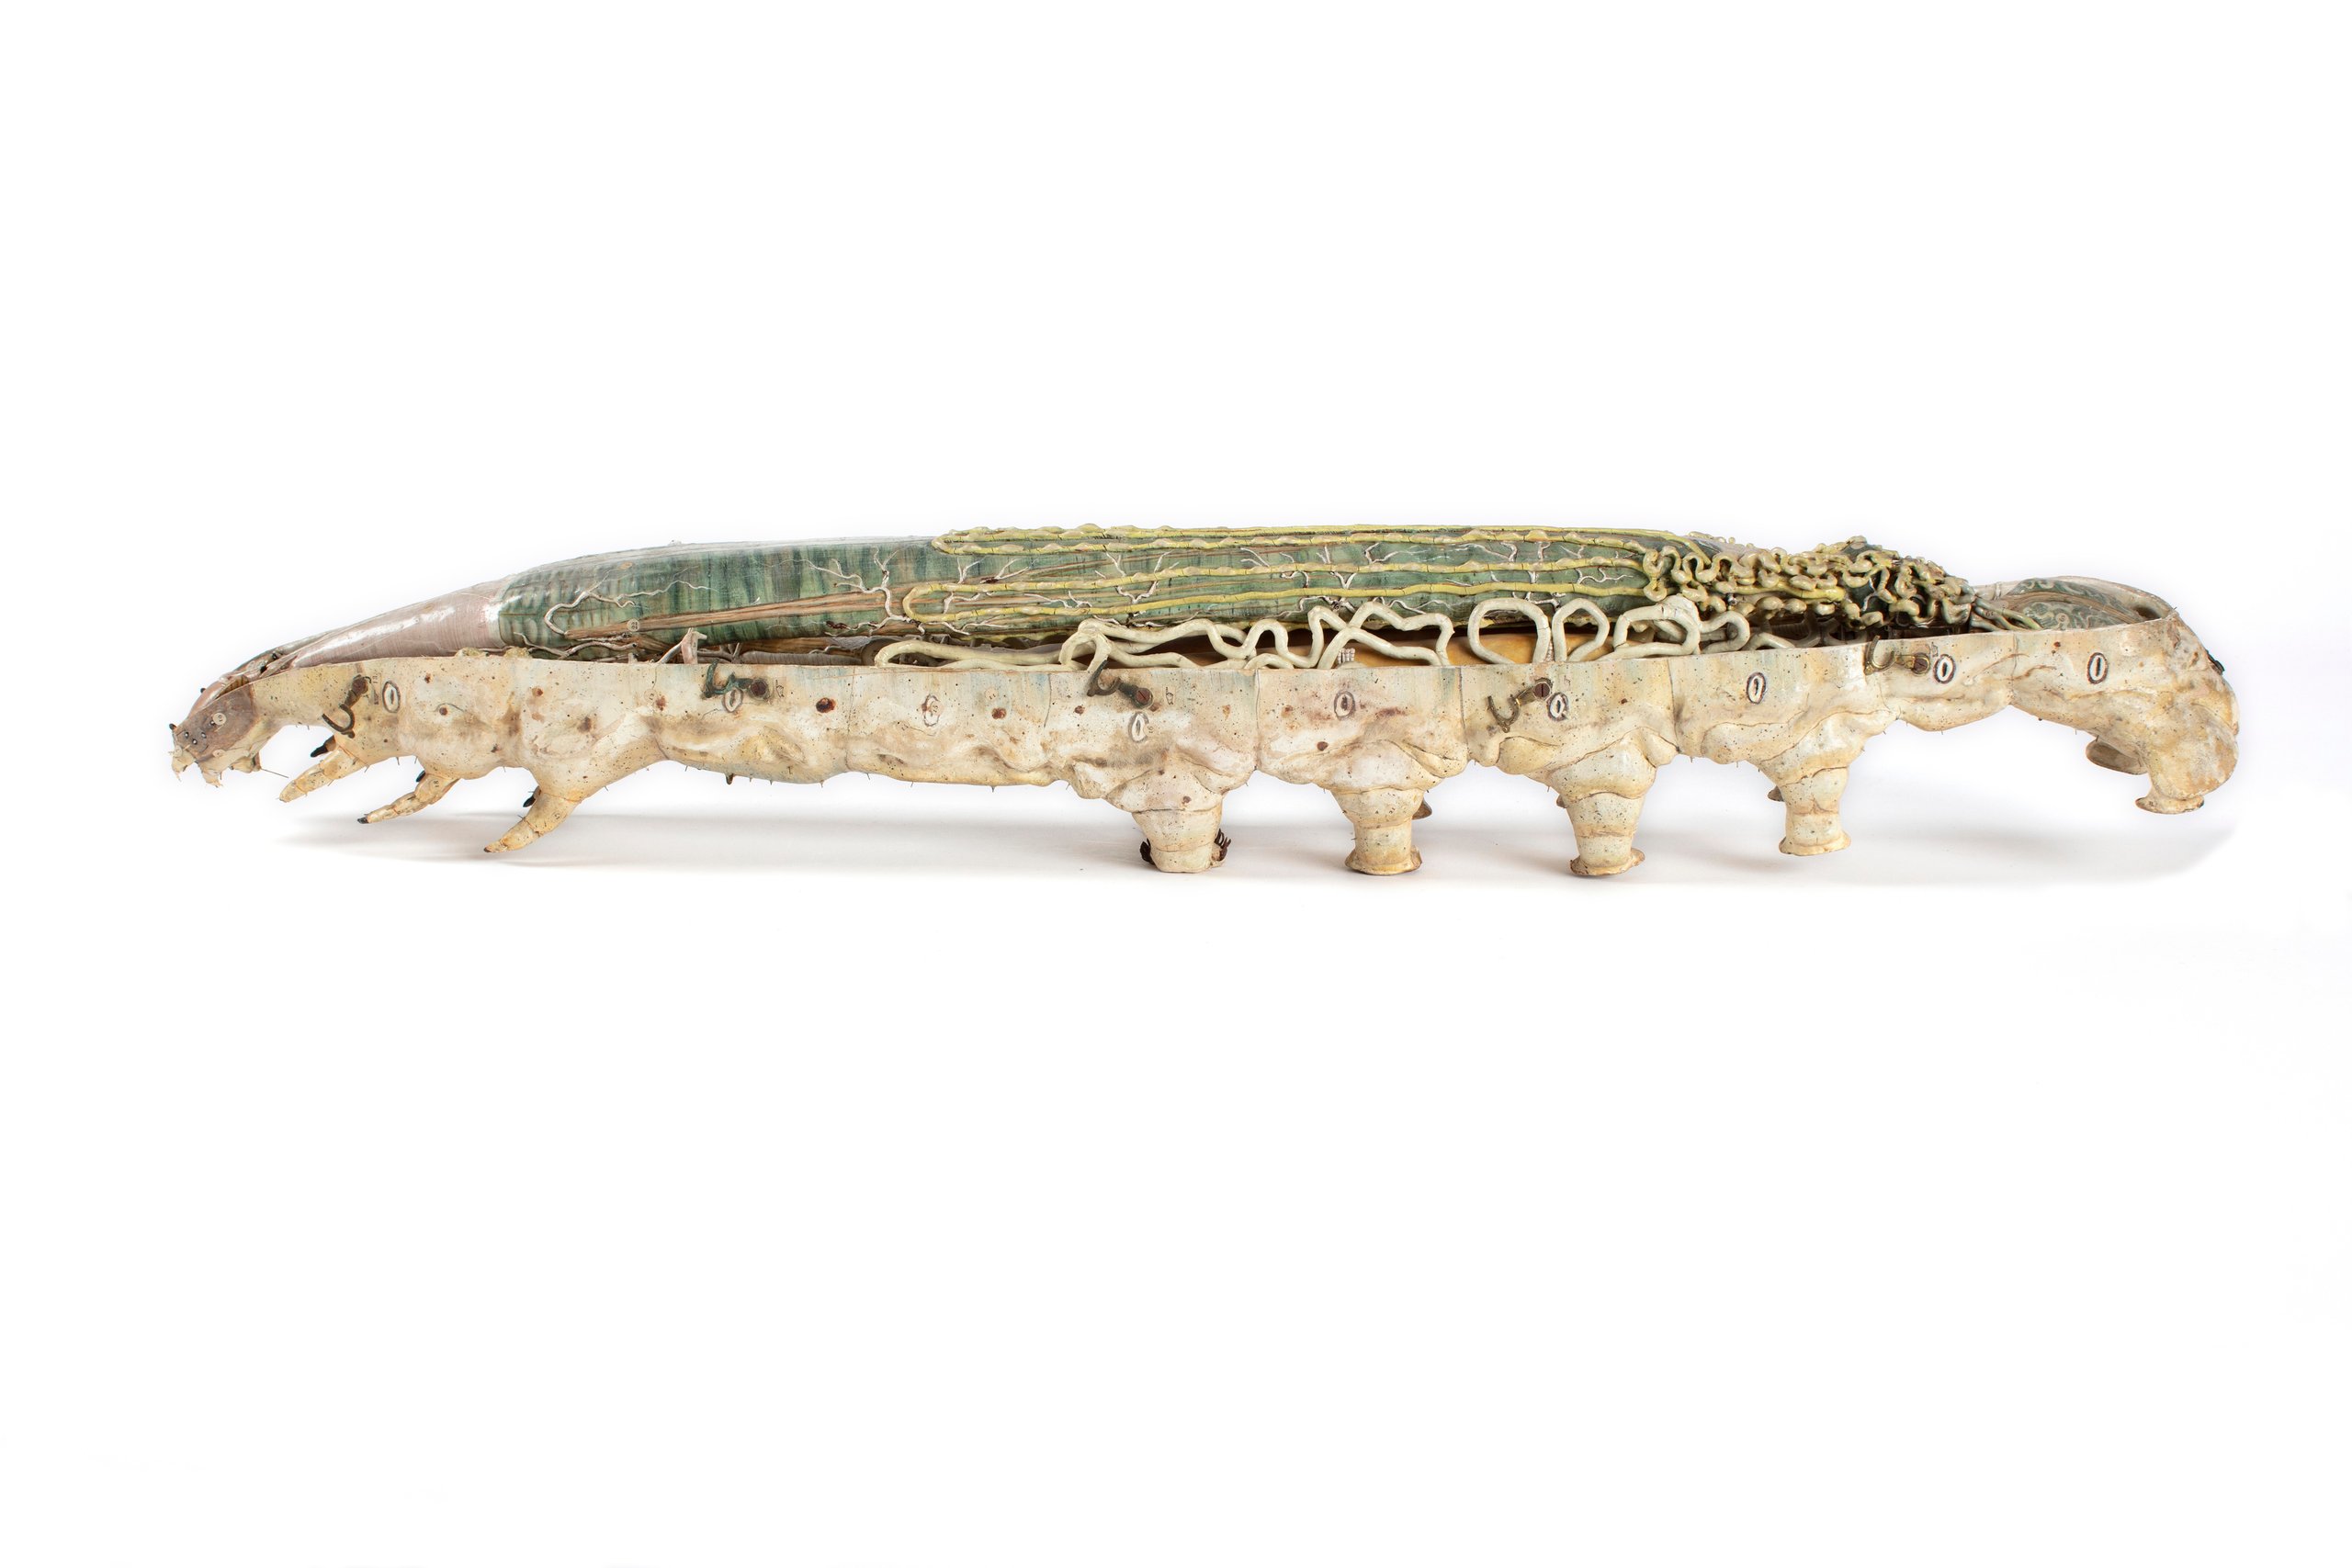 Papier-mâché anatomical model of a silkworm by Dr Louis Auzoux